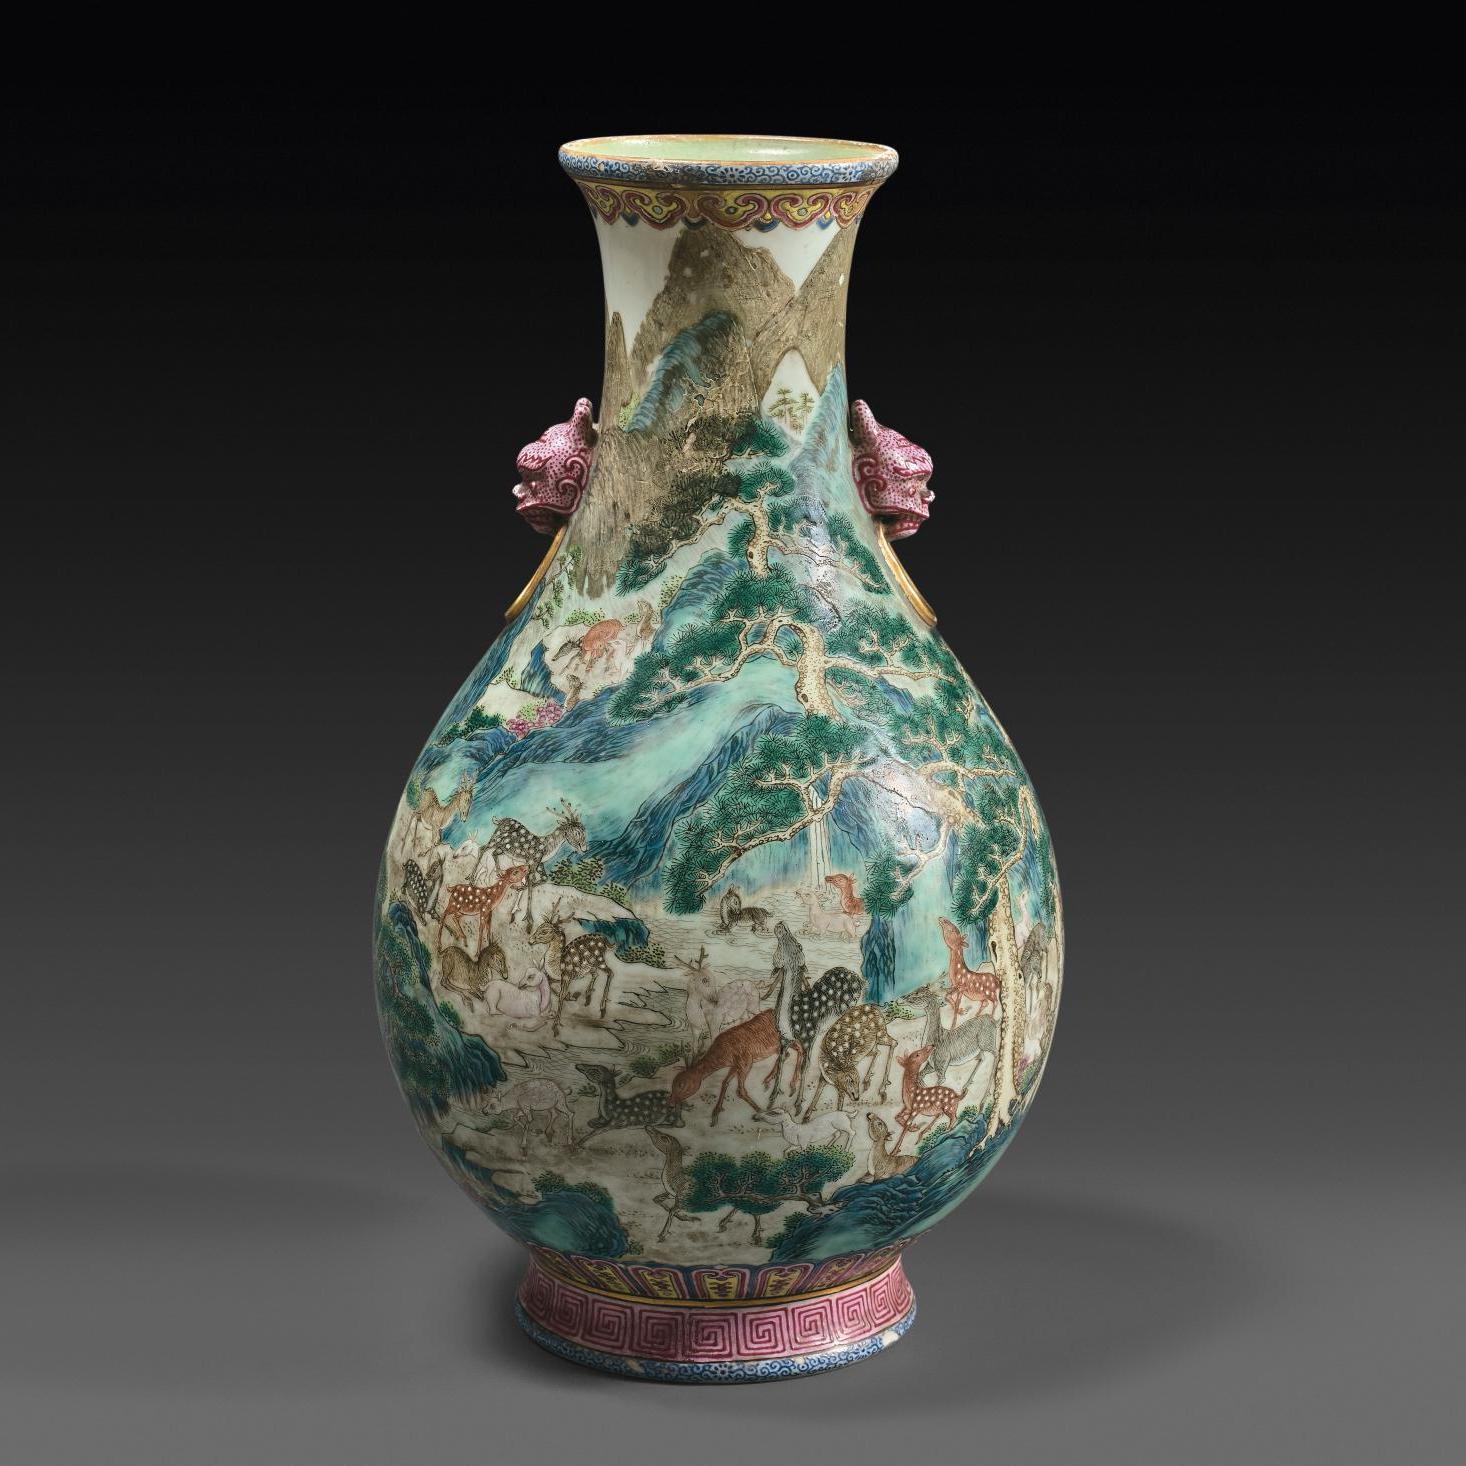 Van Dongen et un vase chinois aux cent daims